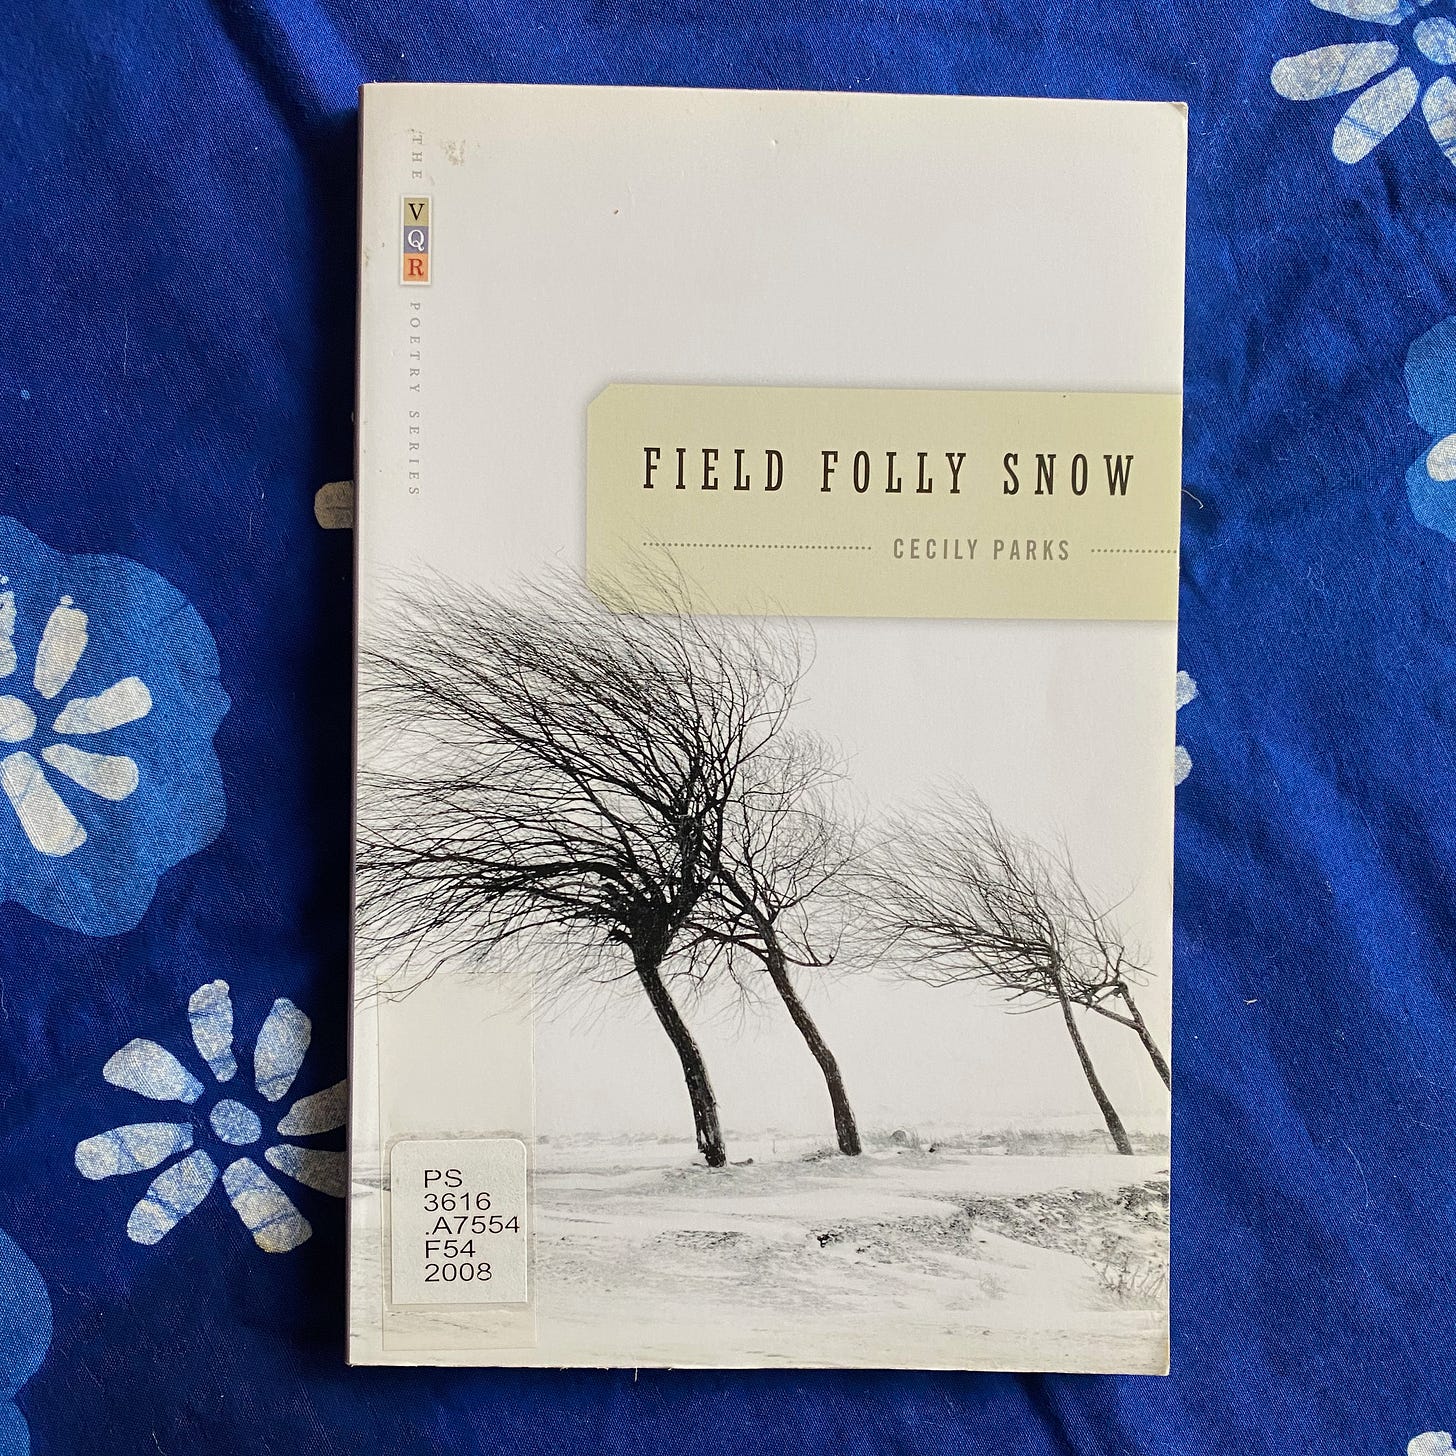 Field Folly Snow on a blue tablecloth.